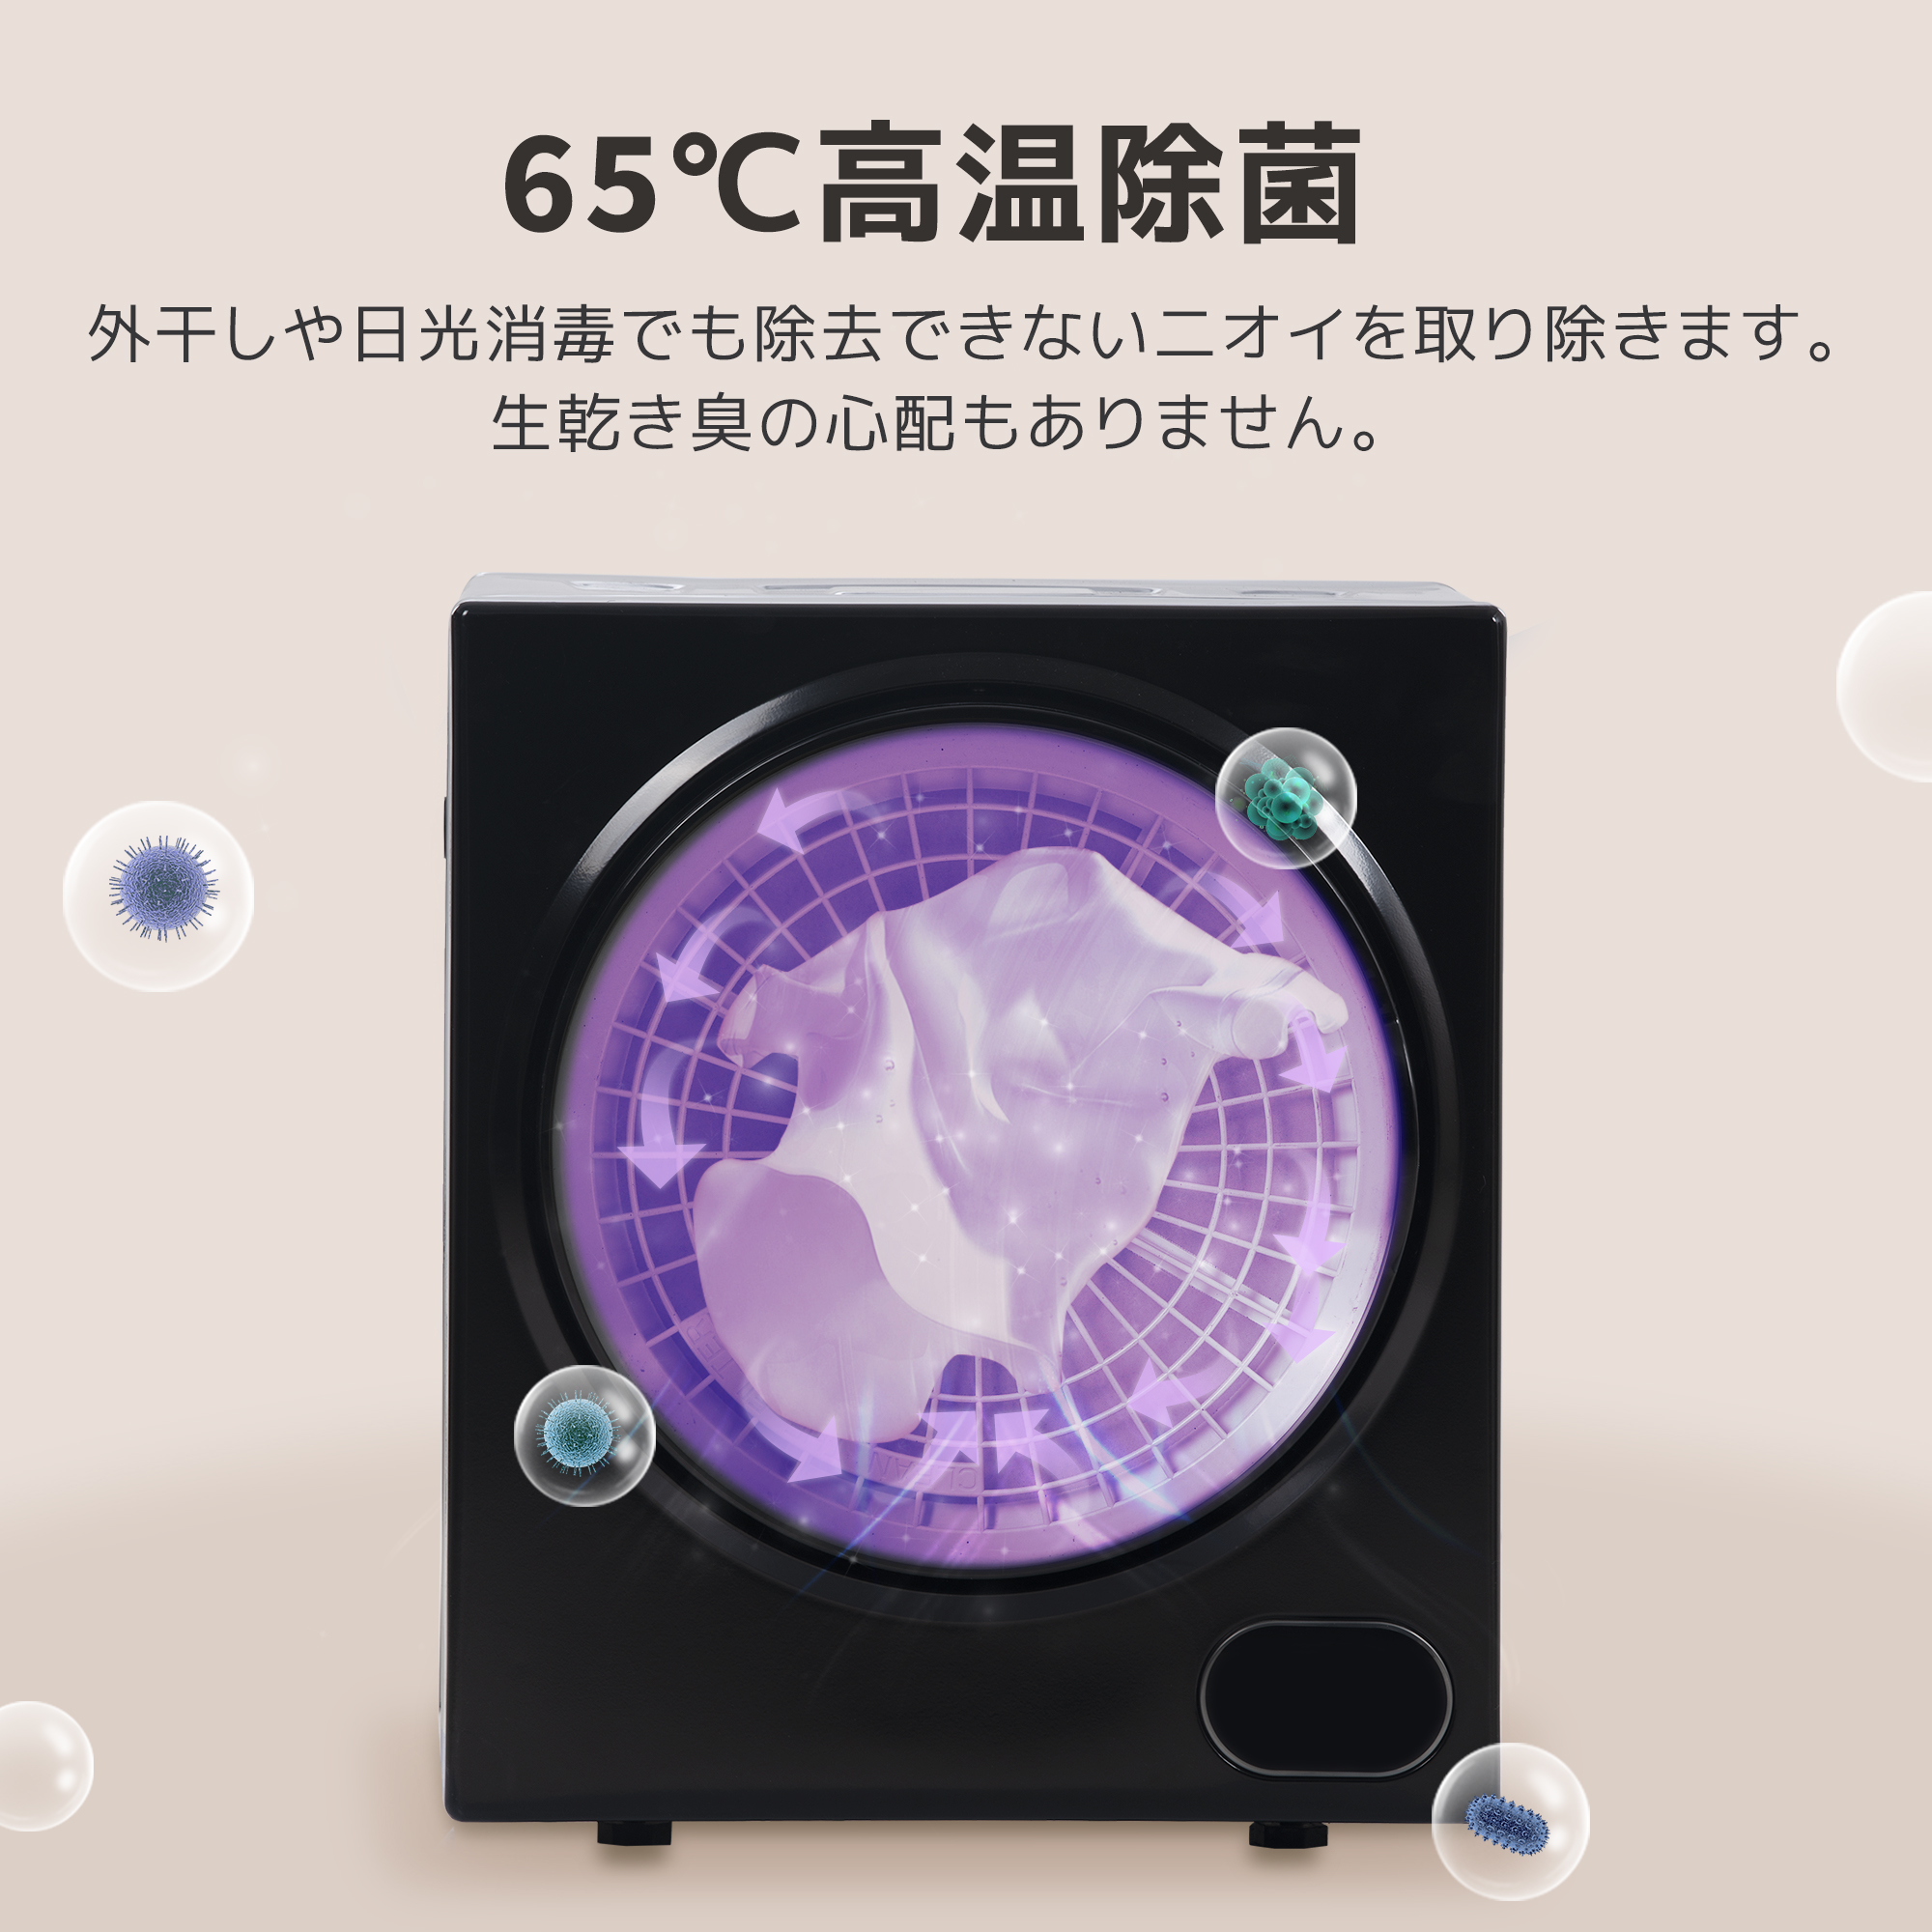 衣類乾燥機 3kg 湿気対策 梅雨対策 カビ対策 花粉対策 衣類乾燥機 3kg